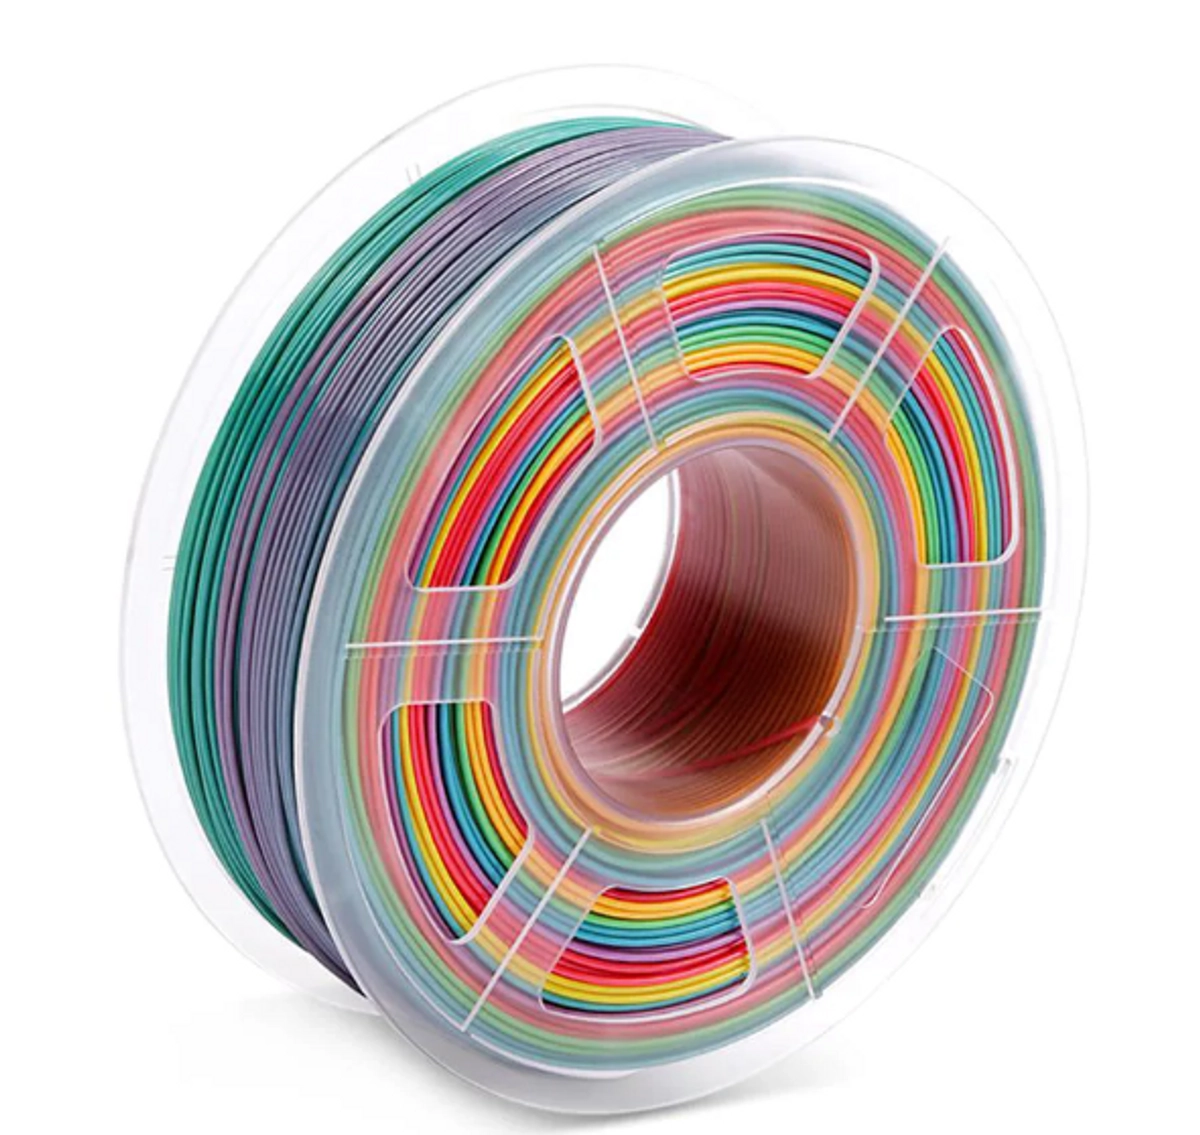 Bobine Filament Pla phosphorescent, 1.75 Mm, impression 3D en vert, 1Kg,  10M, 100G, matériaux, rouge, bleu ciel, violet - AliExpress